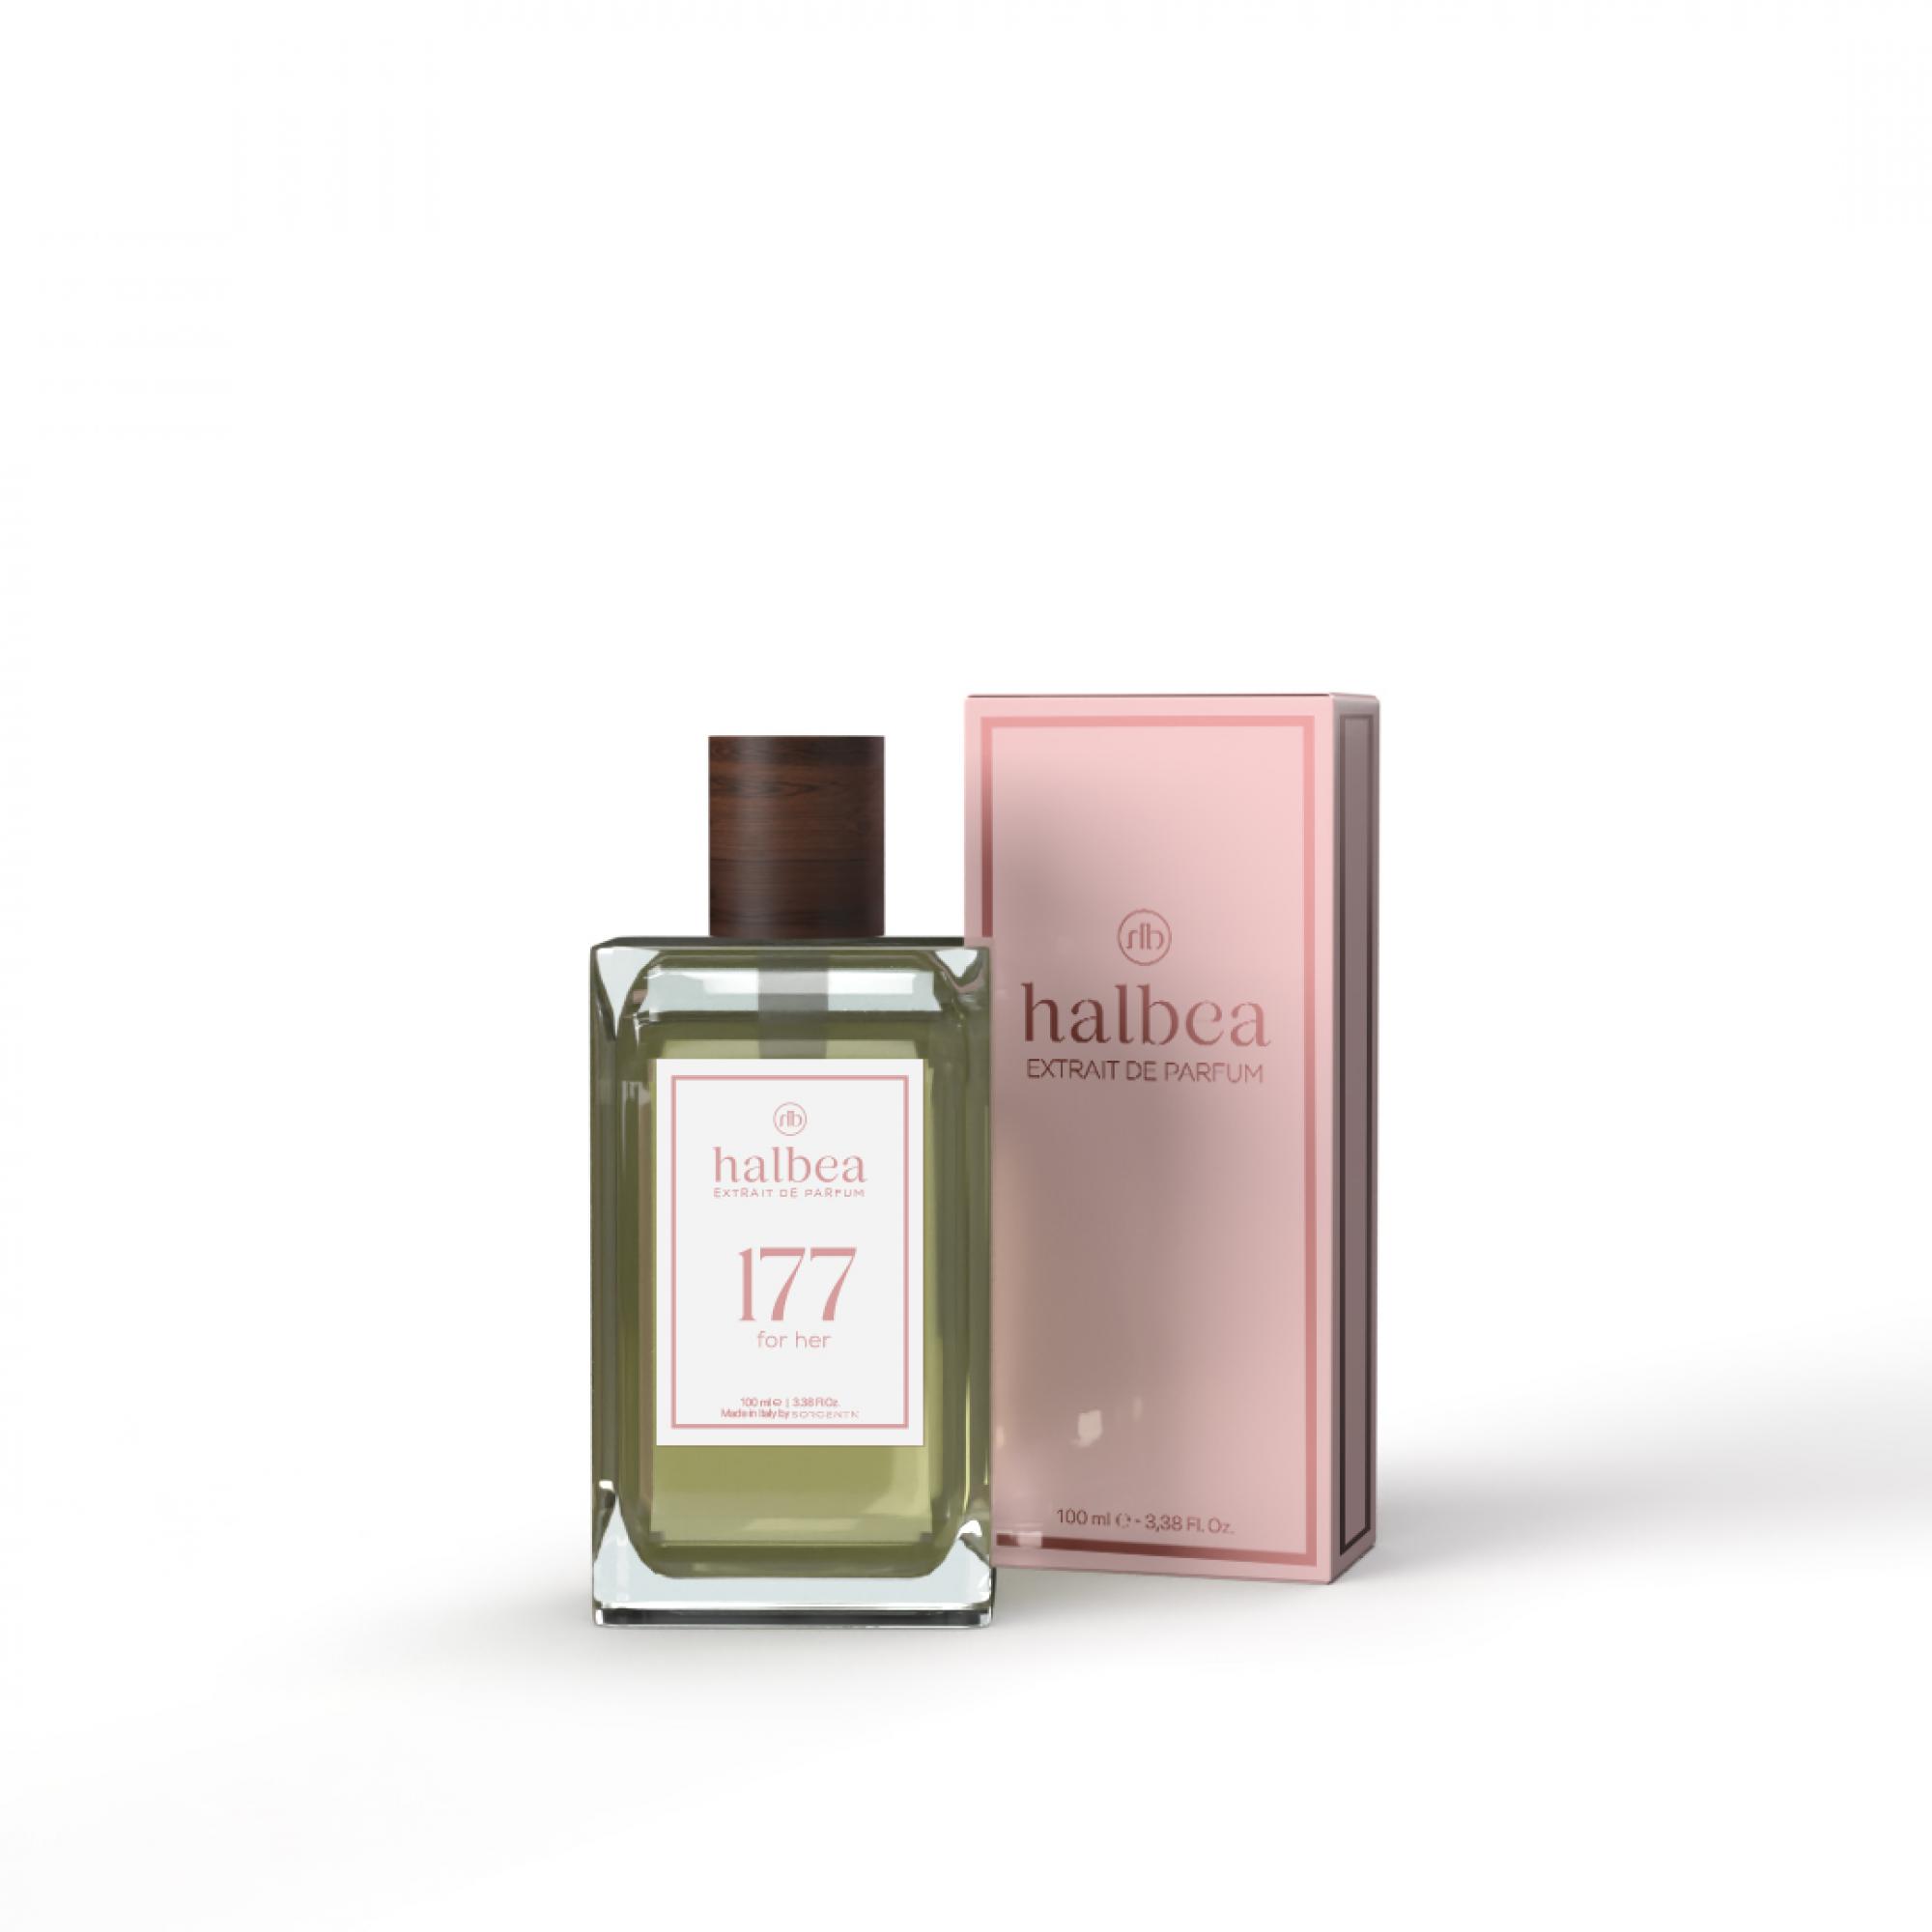 Halbea Parfum Nr. 177 insp. by Chloé Chloé Sorgenta 100ml